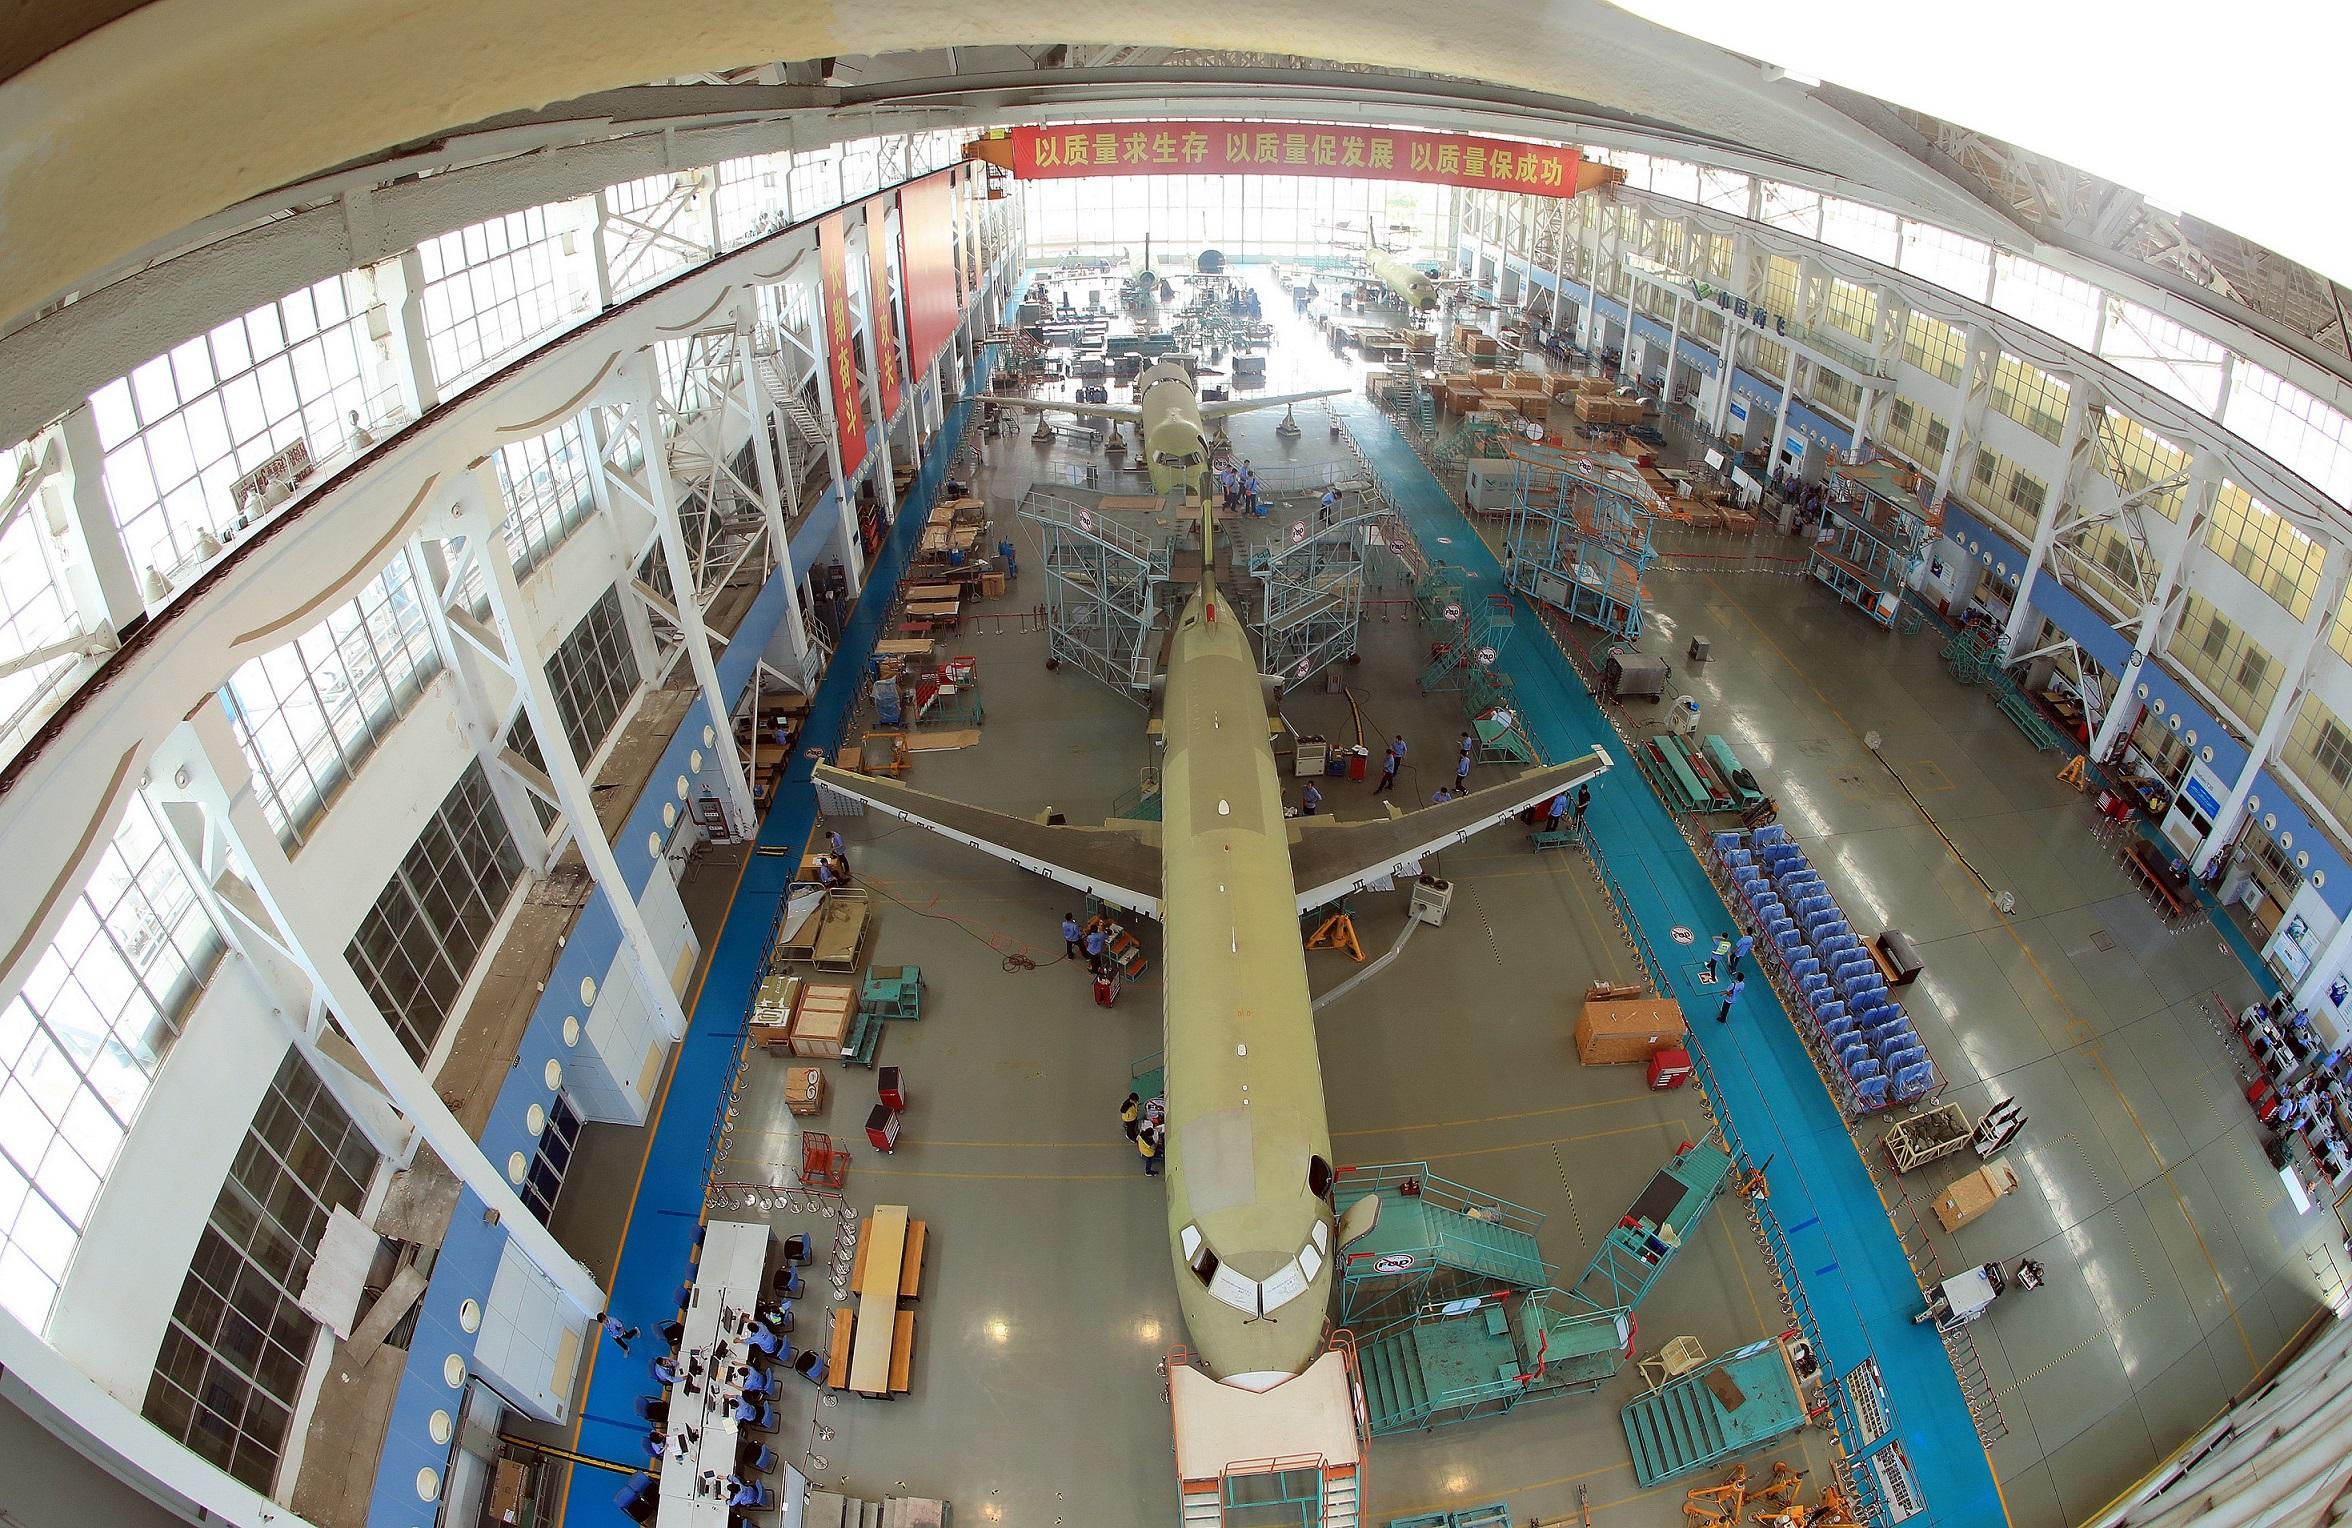 上海飞机制造厂里壮观的制造现场,张海峰摄影